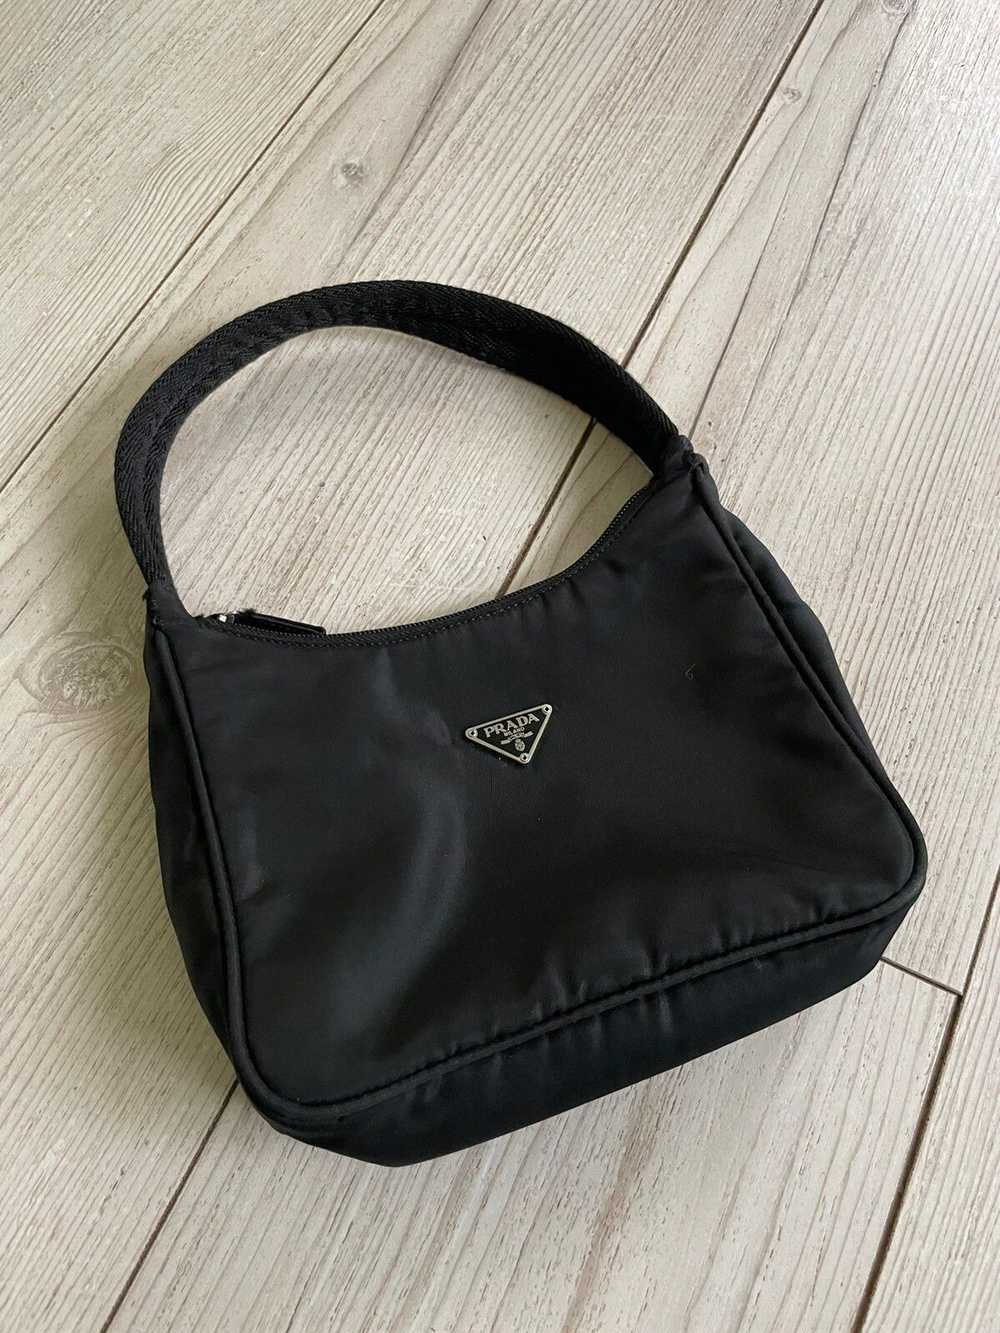 Prada Vintage Black Nylon Prada hobo bag - image 4